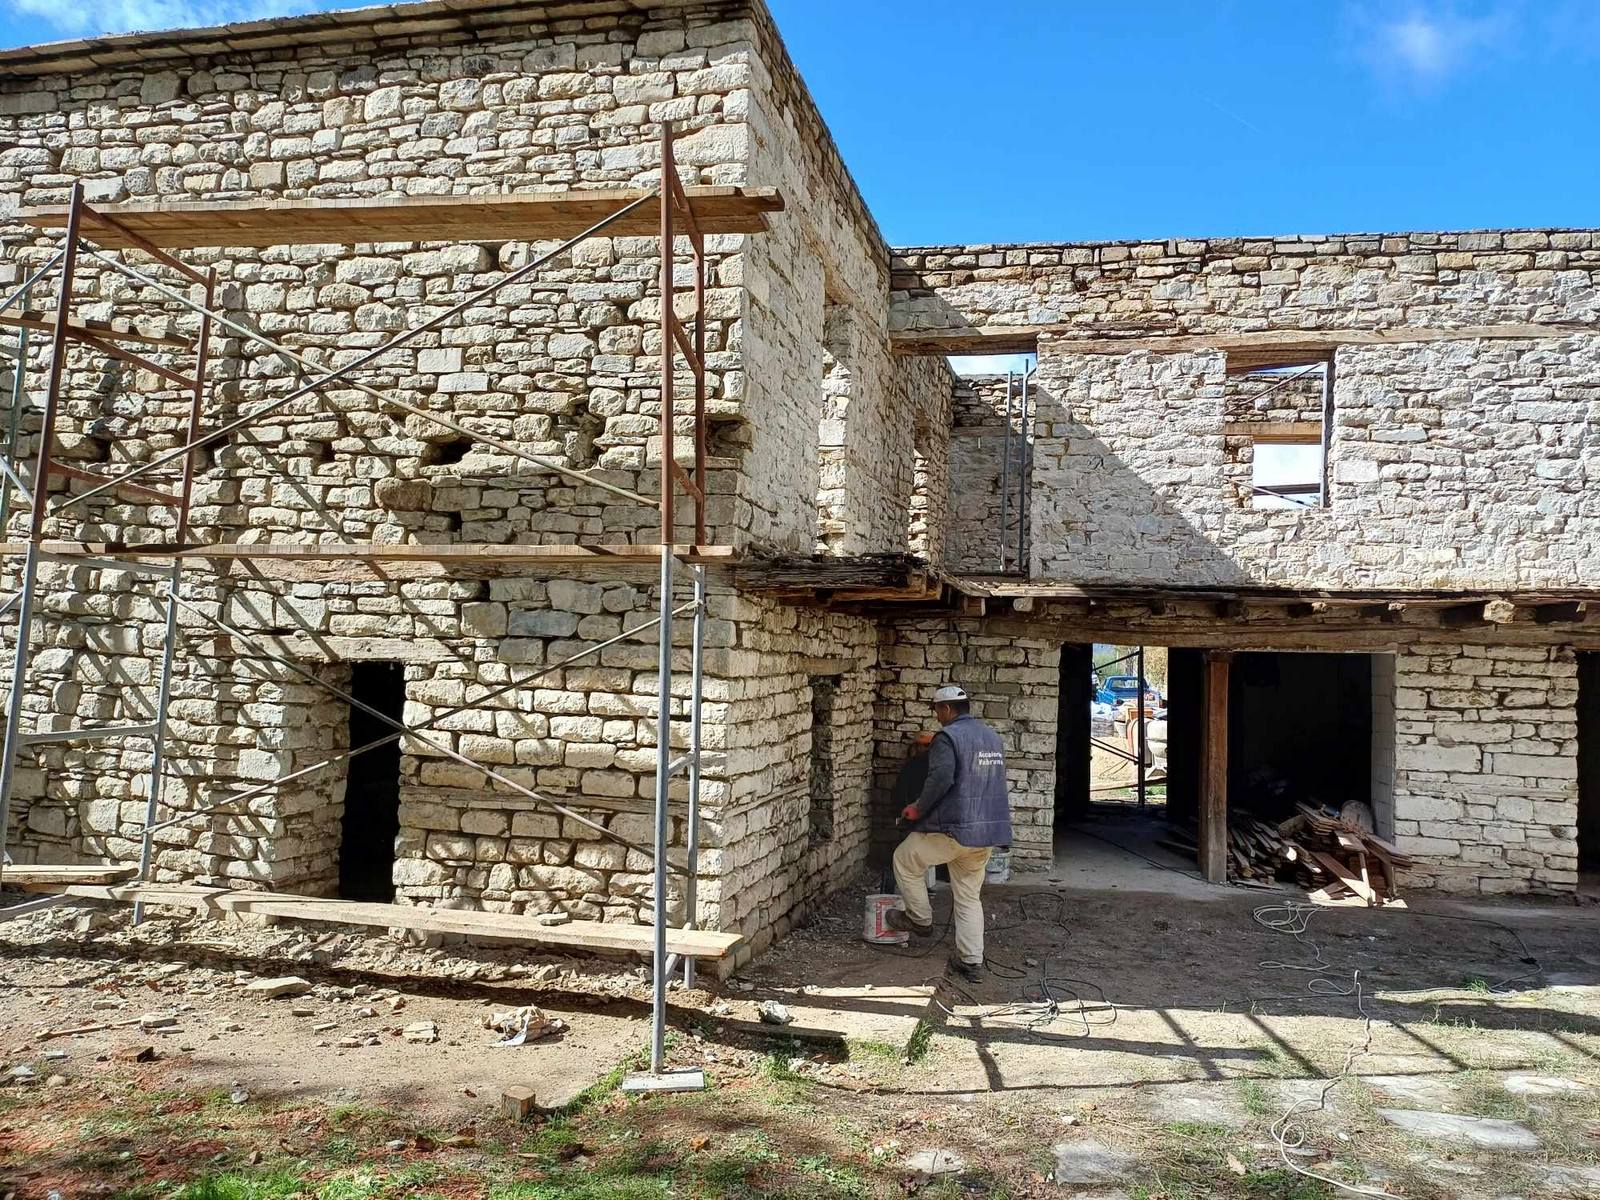 Με γοργούς ρυθμούς οι εργασίες συντήρησης και αποκατάστασης των κτιρίων και του προαύλιου χώρου της Ιεράς Μονής Αγίου Γεωργίου στο Επταχώρι Καστοριάς